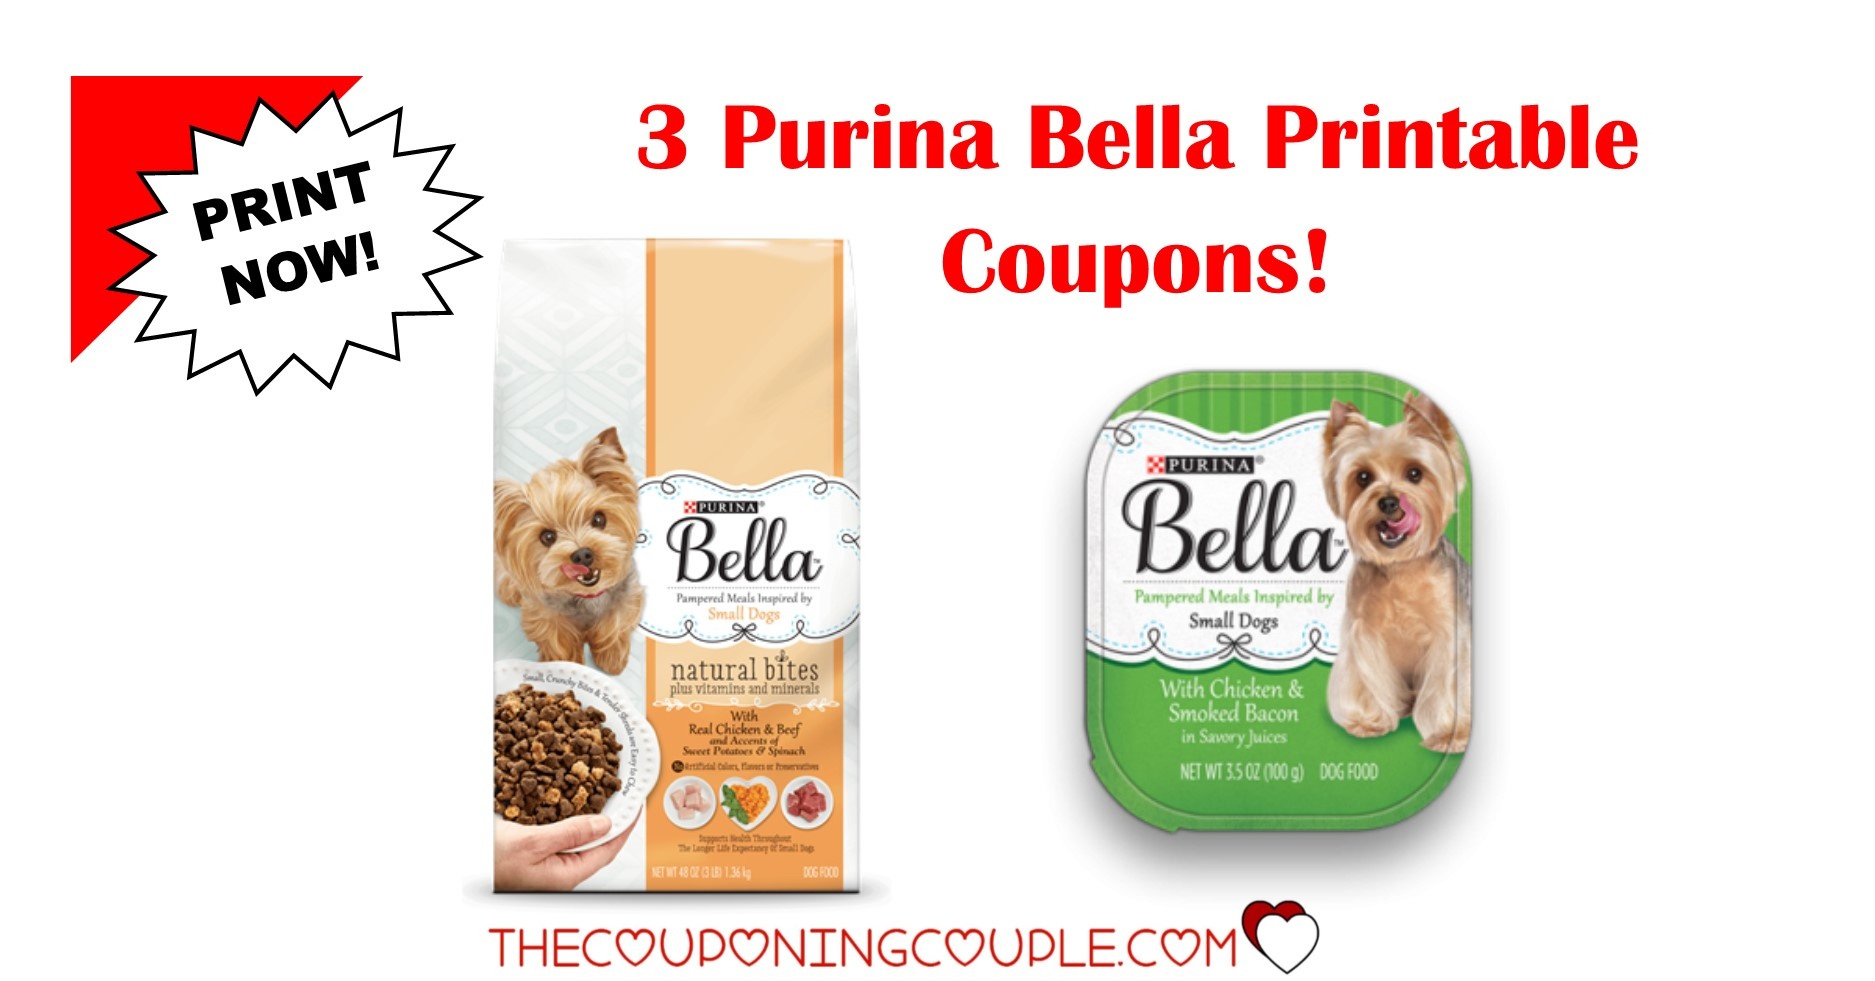 3 New Purina Bella Dog Food Printable Coupons ~ Print Now! - Free Printable Dog Food Coupons